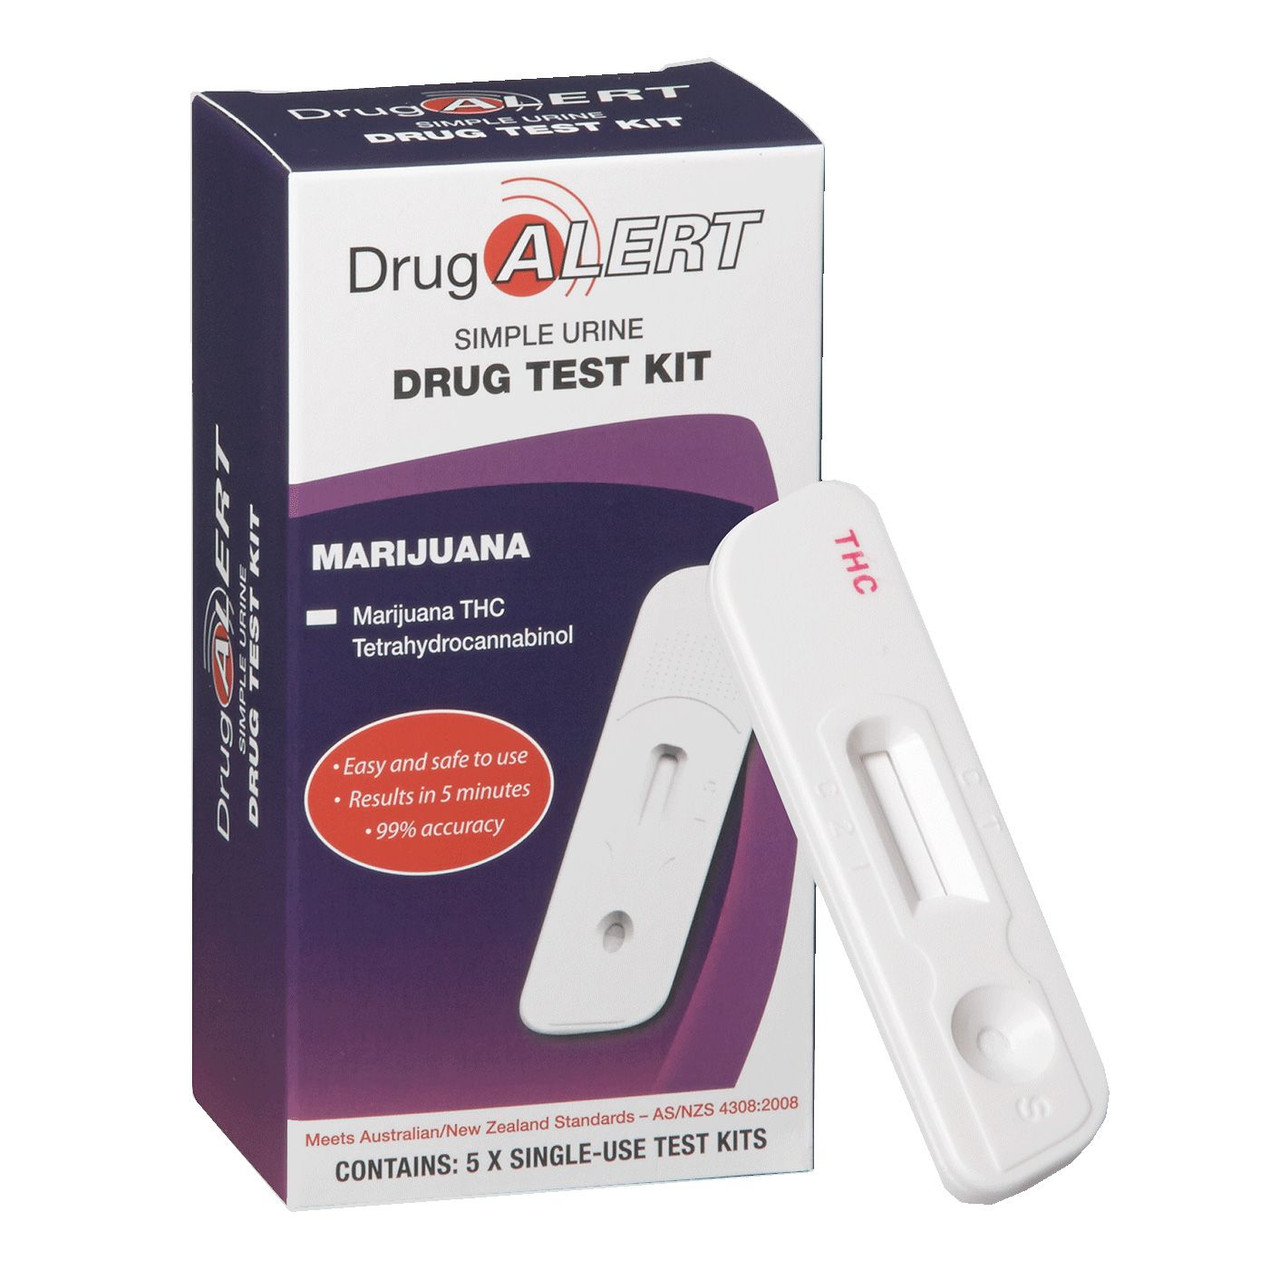 Drug Alert Marijuana Drug Test Kit x 5 Single Use Tests